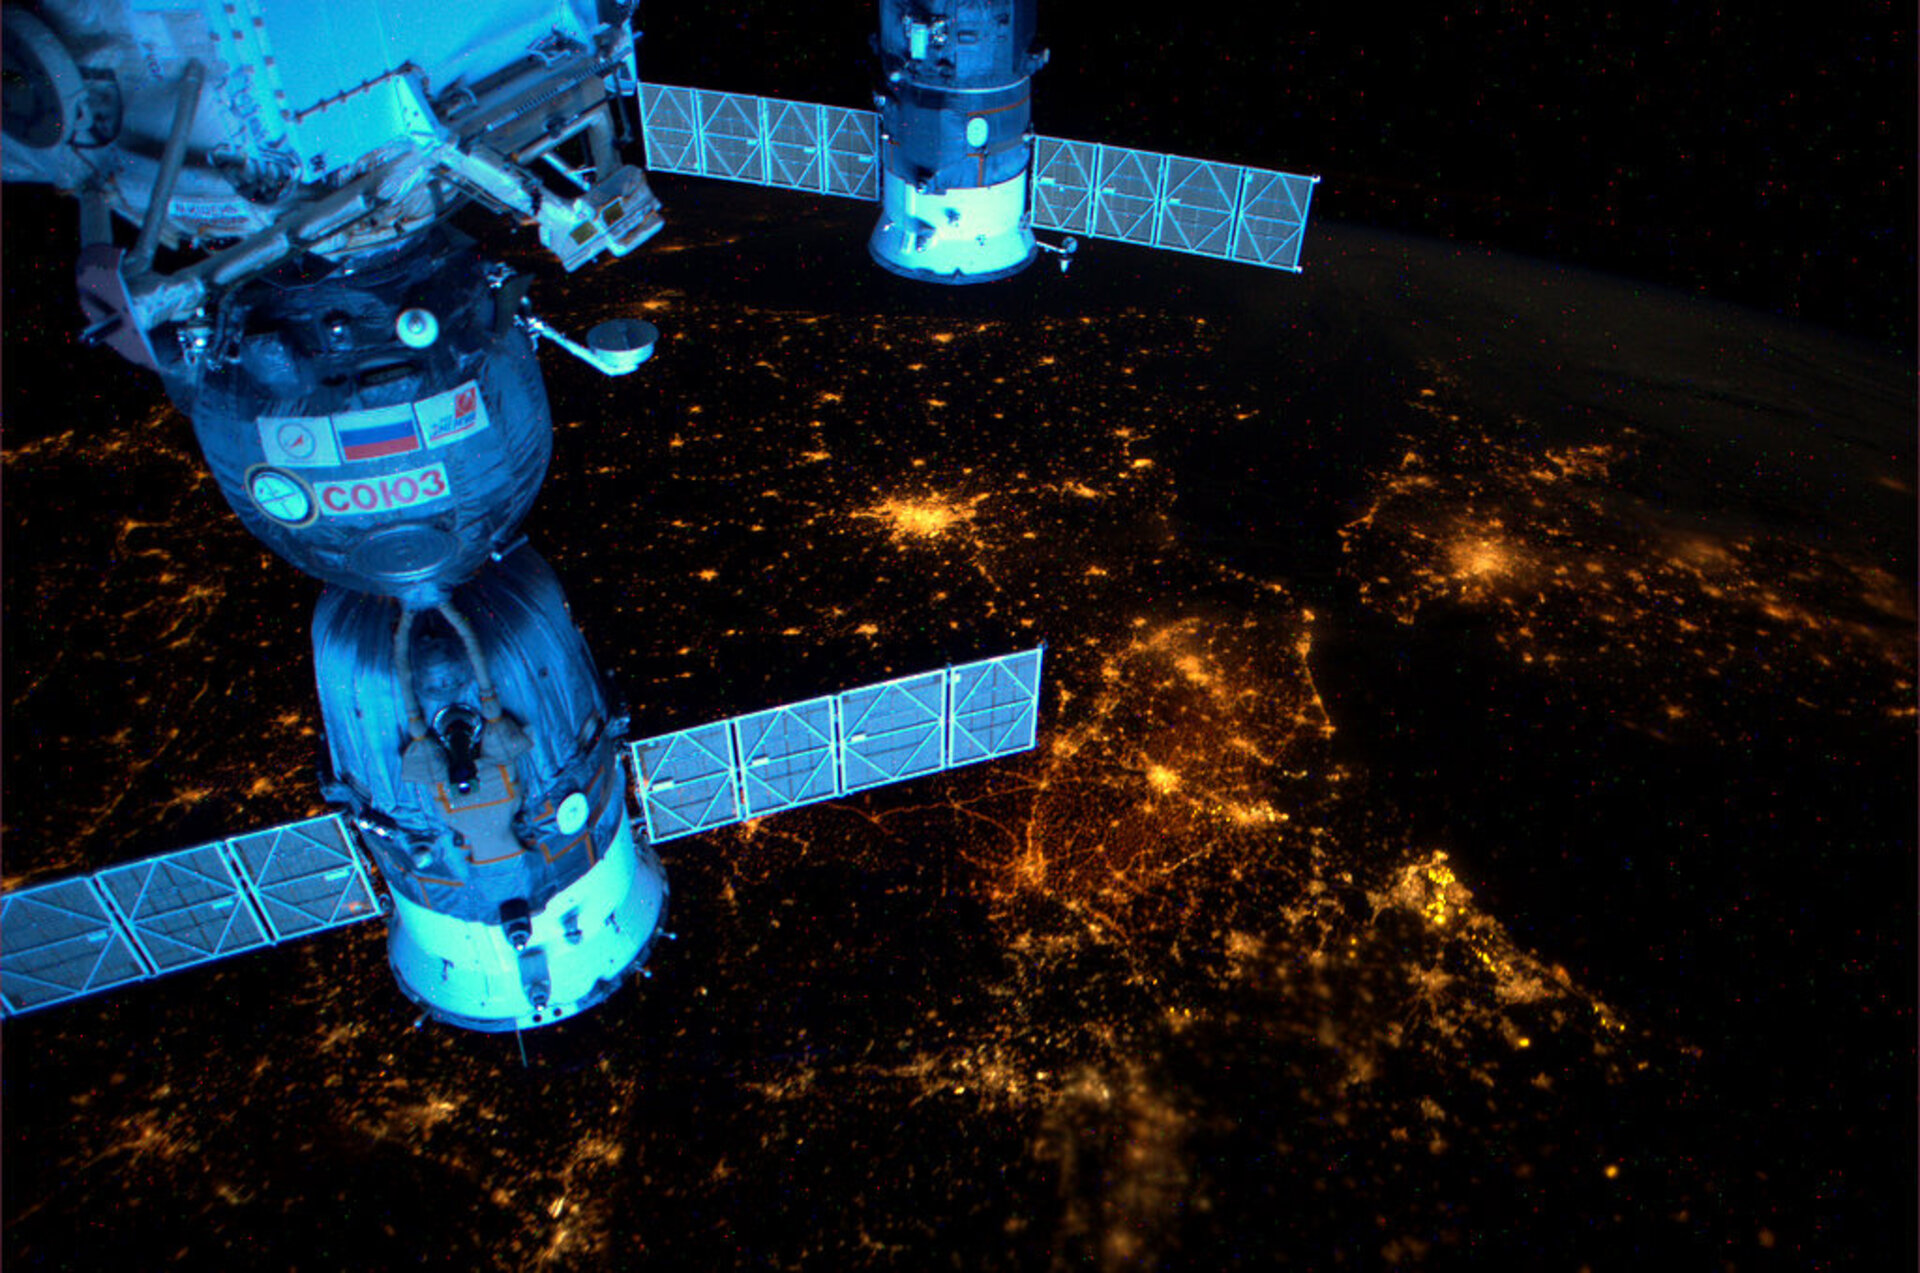 Soyuz spacecraft above Europe